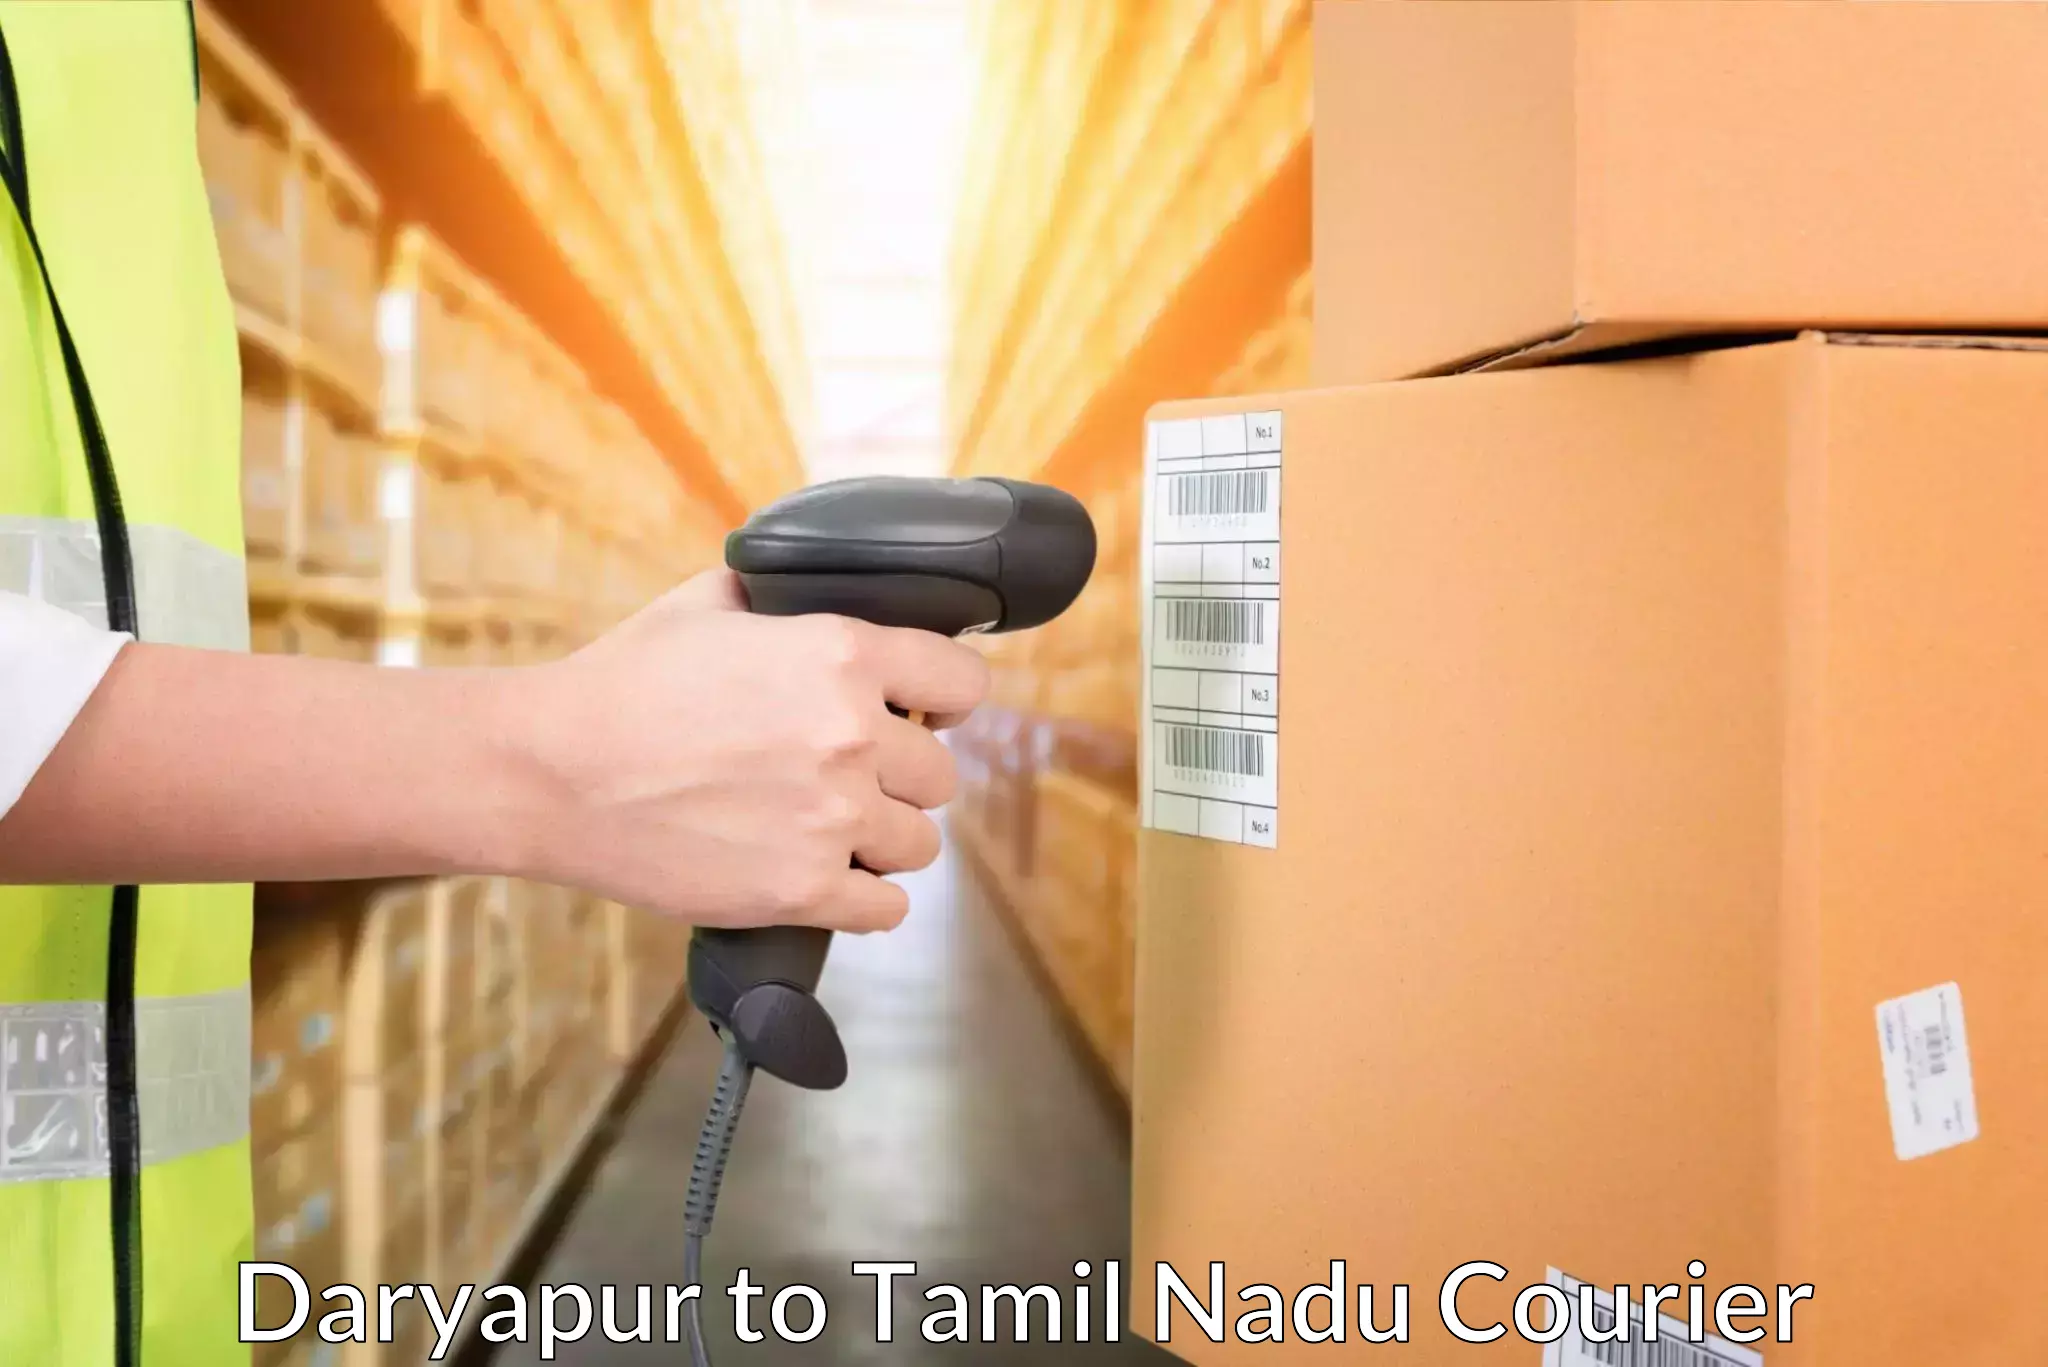 24/7 courier service Daryapur to Pattukkottai